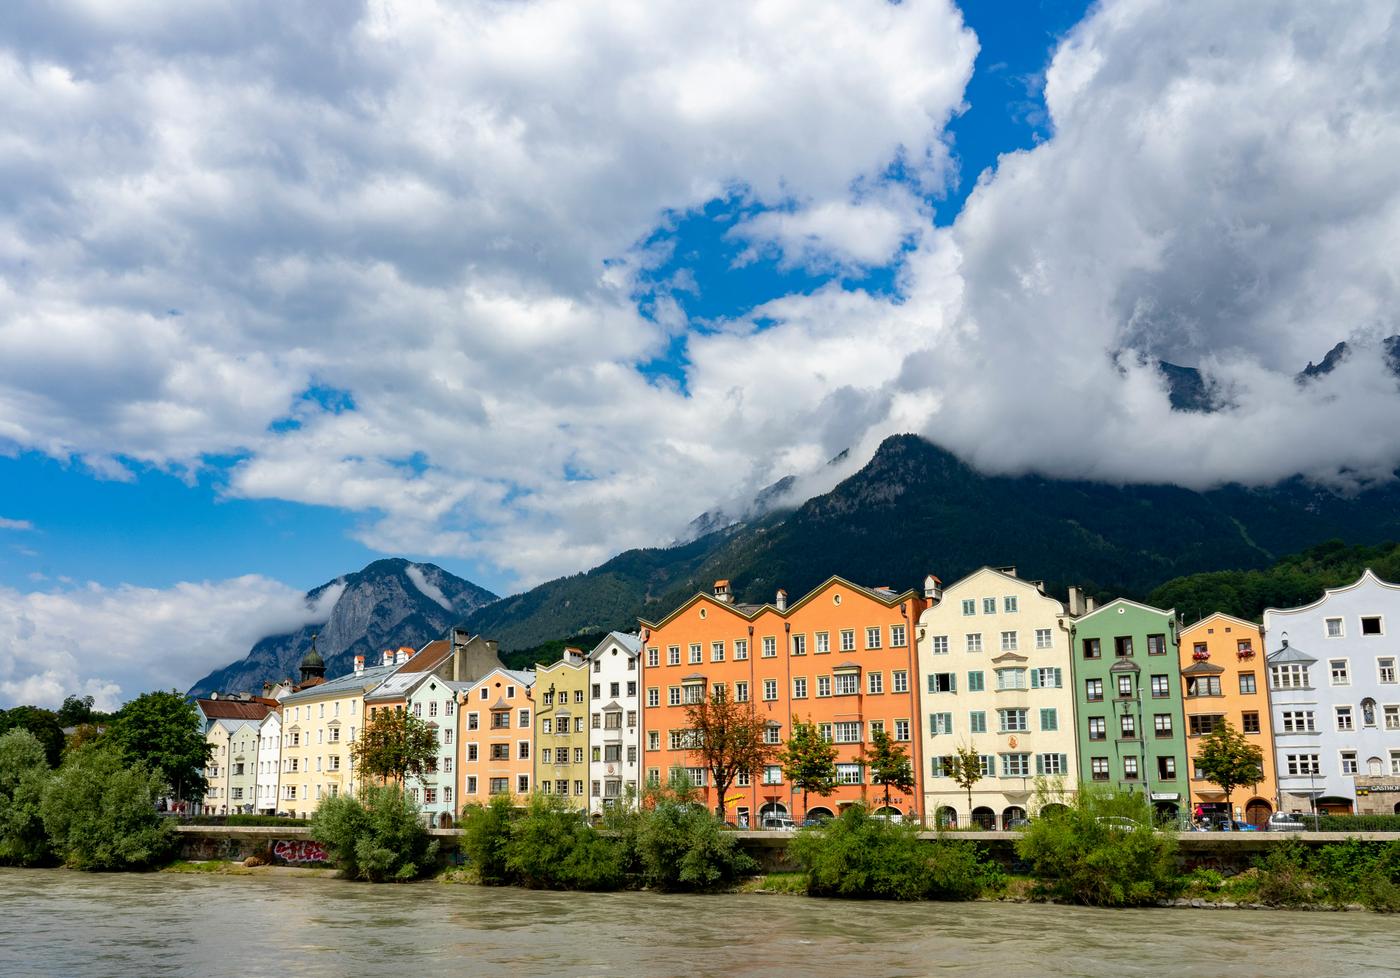 Innsbruck: Alpine town with a heart